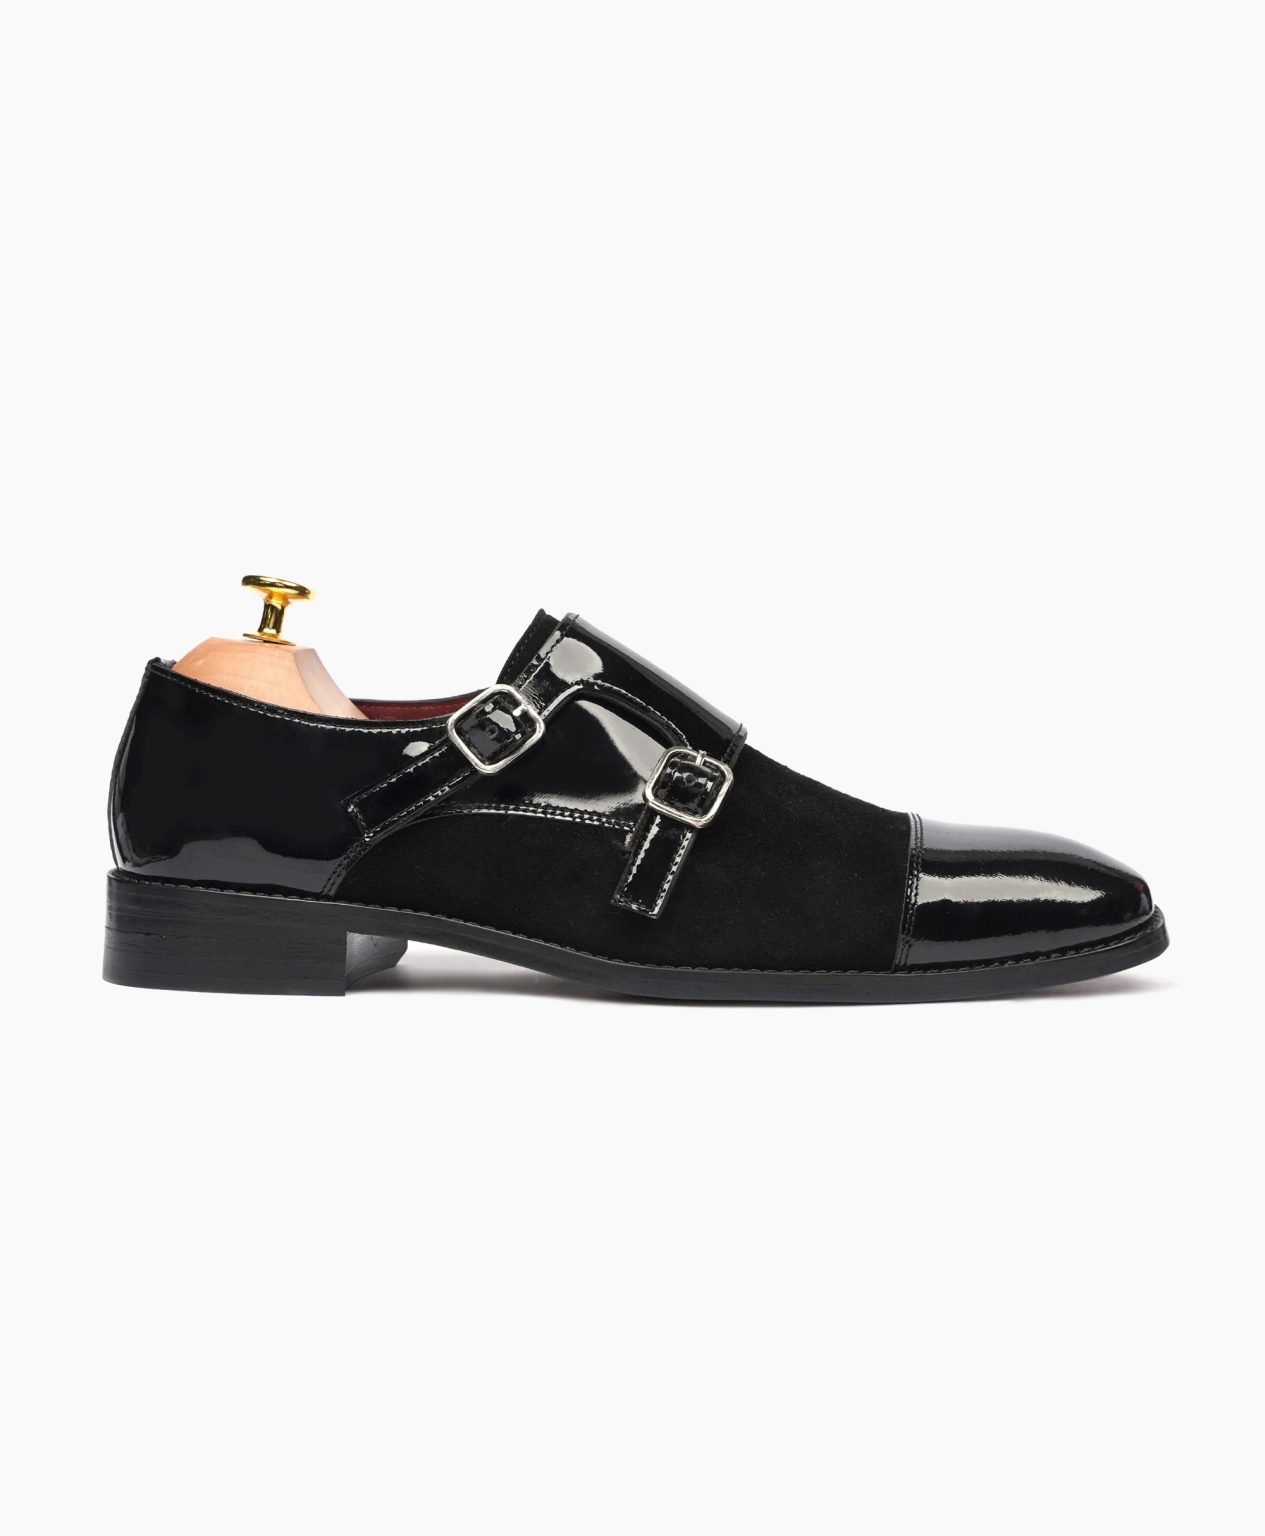 totnes-double-monkstrap-black-leather-shoes-image201